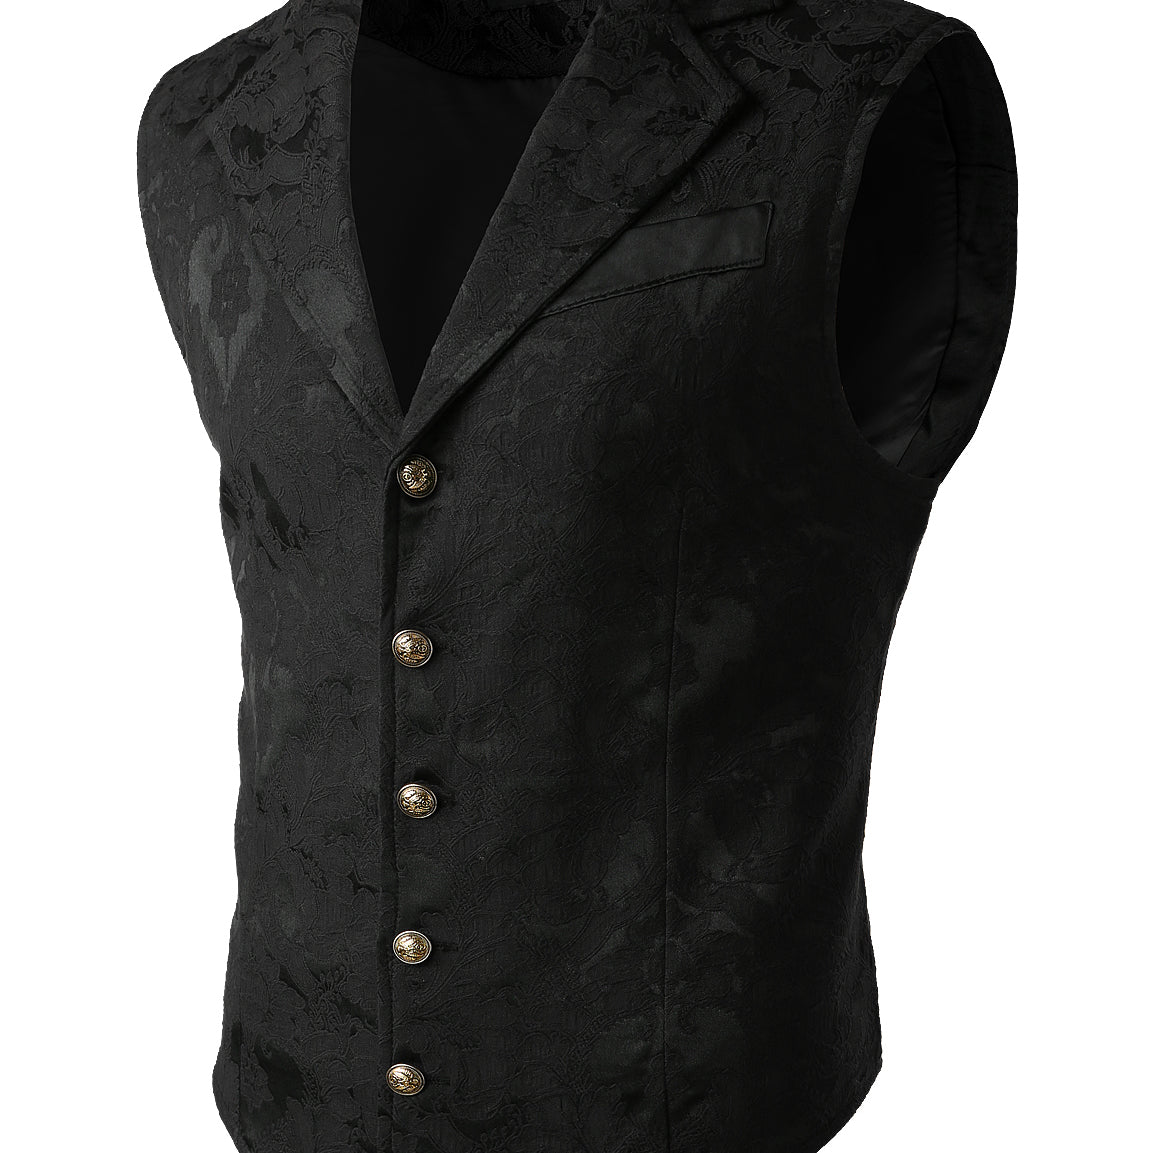 Men's Victorian Suit Vest Vintage Paisley Steampunk Gothic Black Waistcoat